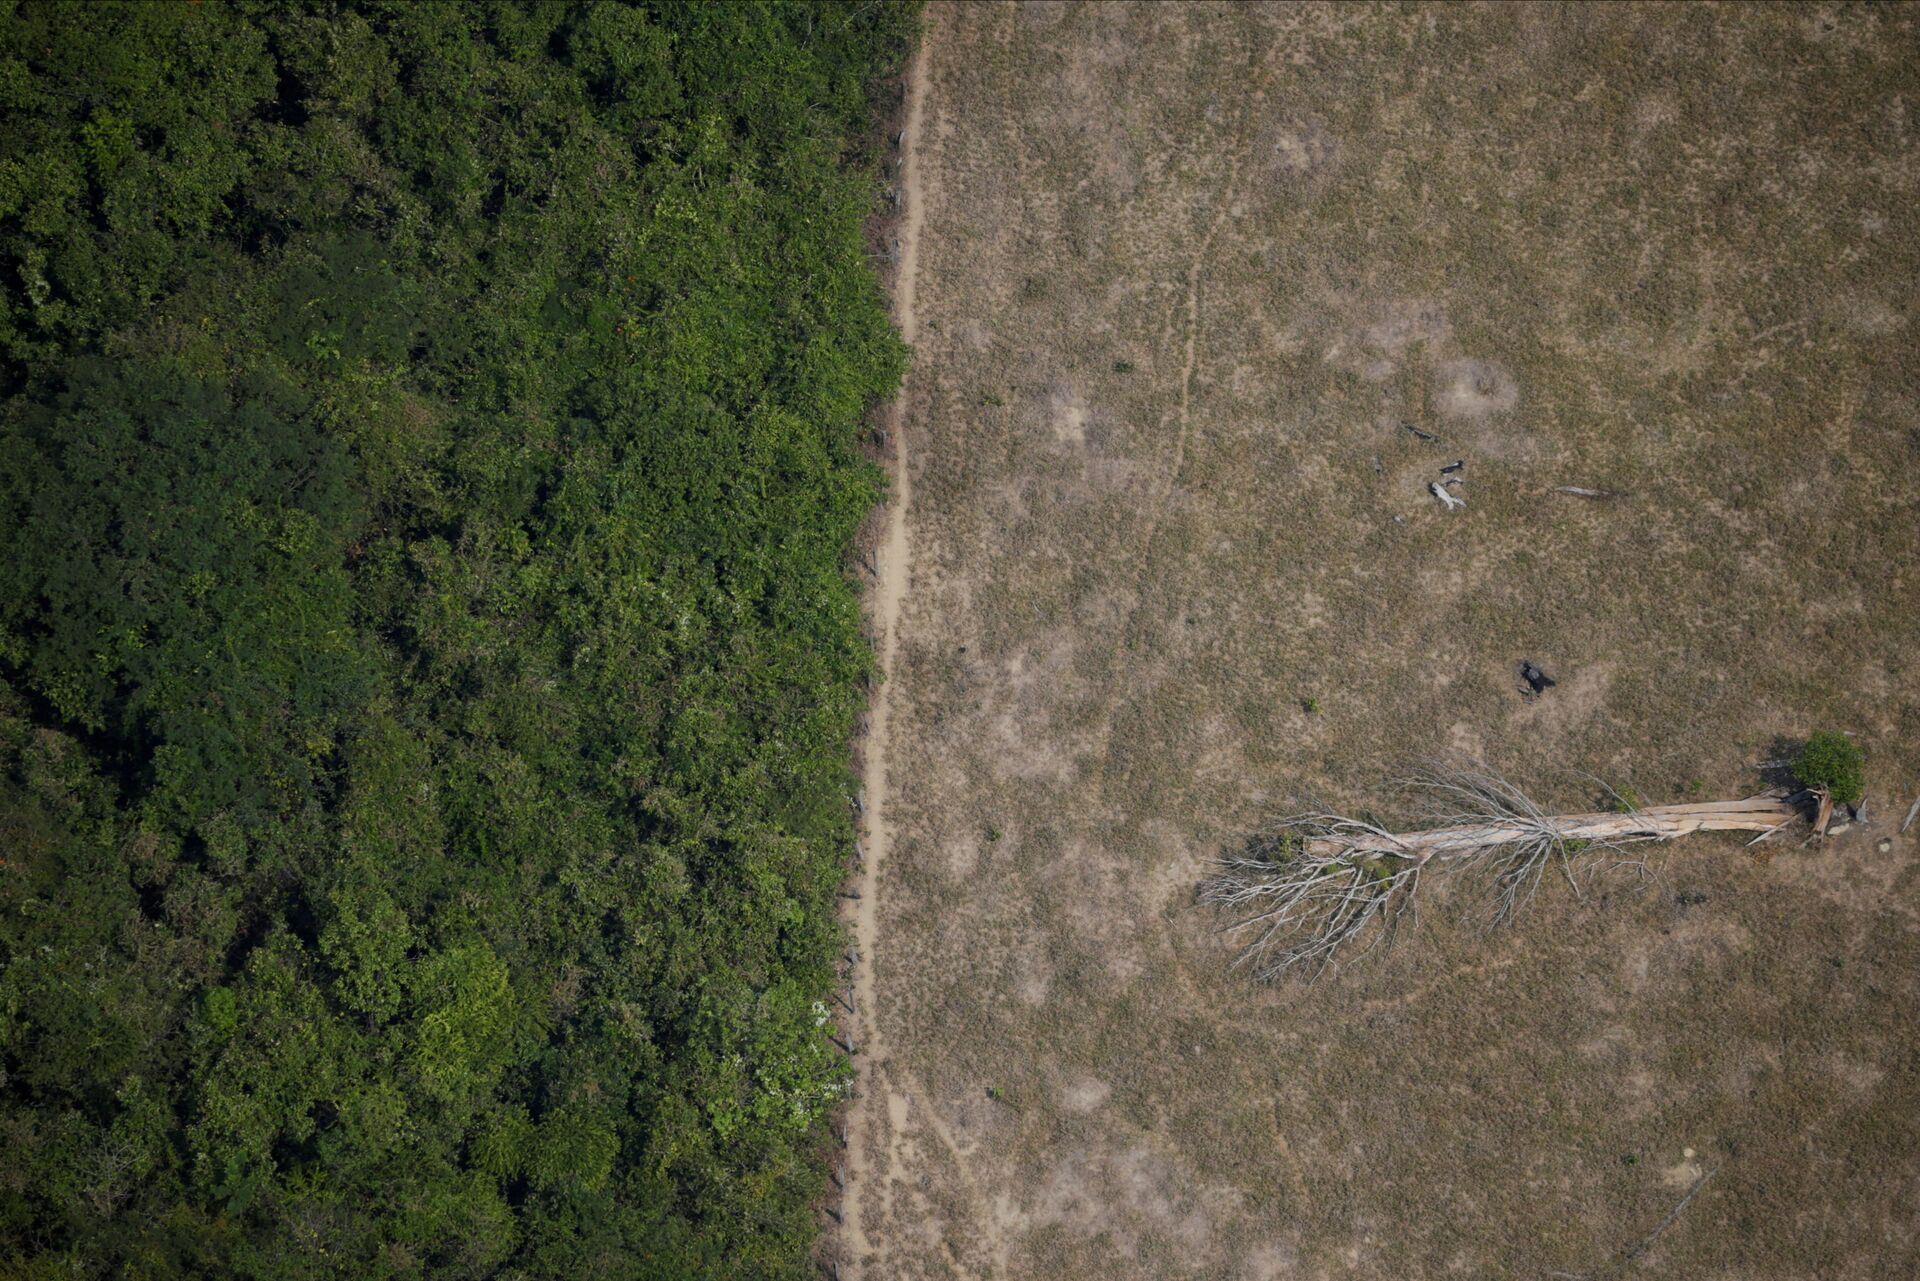 Amazônia registra desmatamento recorde em abril, o pior em 10 anos - Sputnik Brasil, 1920, 17.05.2021